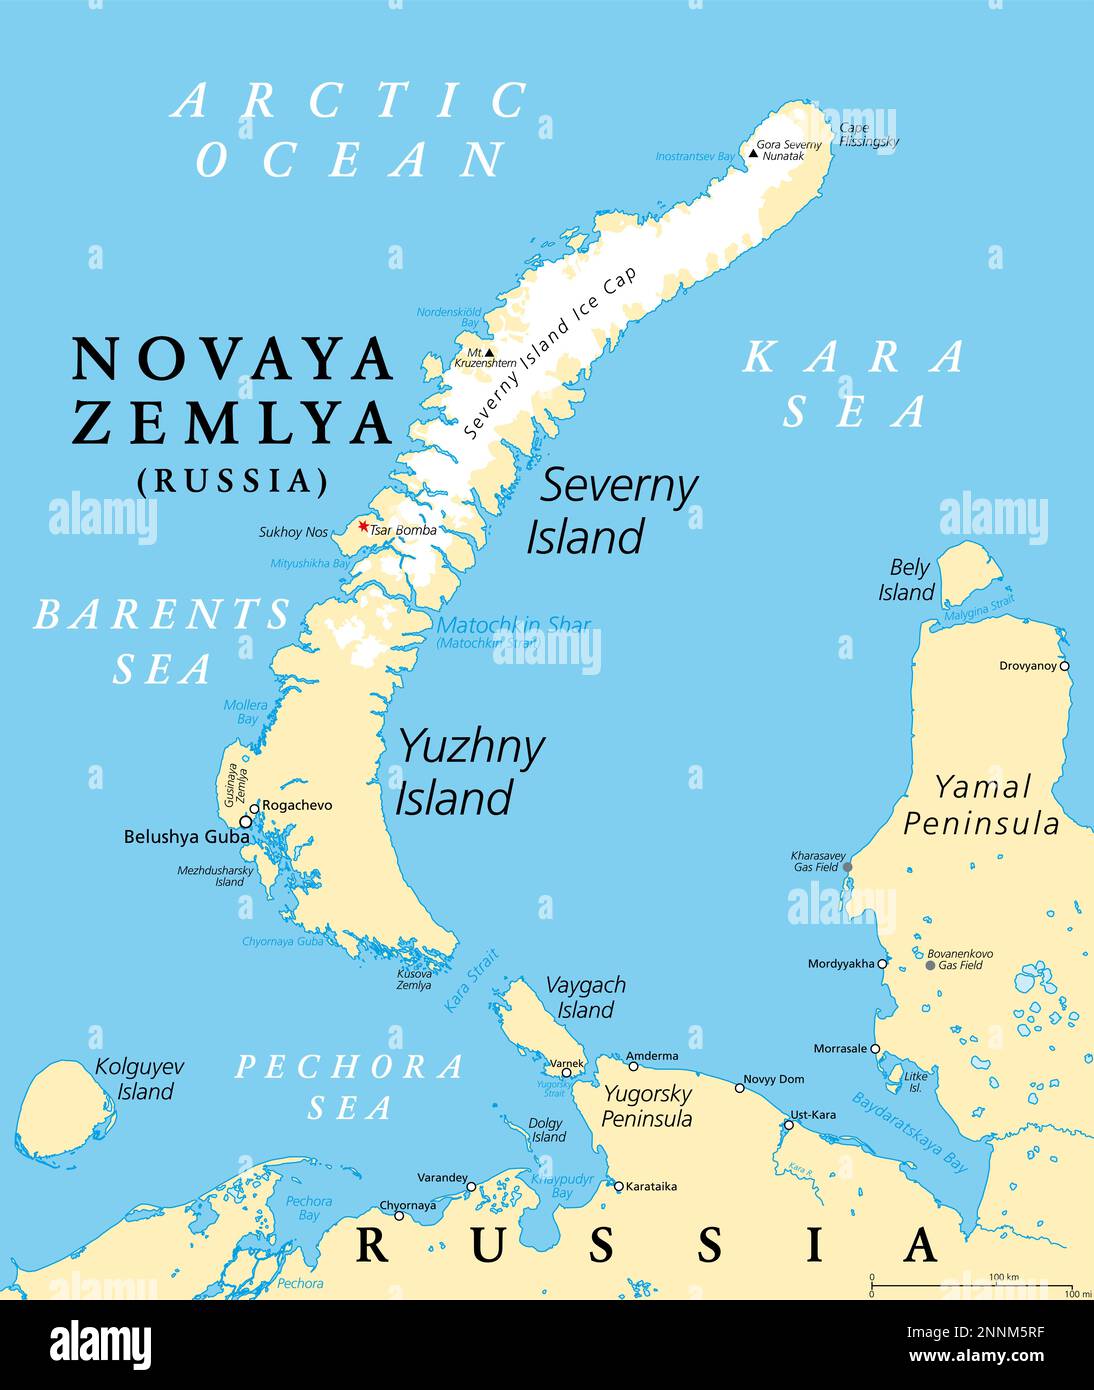 Novaya Zemlya, Archipel in Nordrussland, politische Karte. Gelegen im Arktischen Ozean, zwischen Barentssee und Kara-Meer. Stockfoto